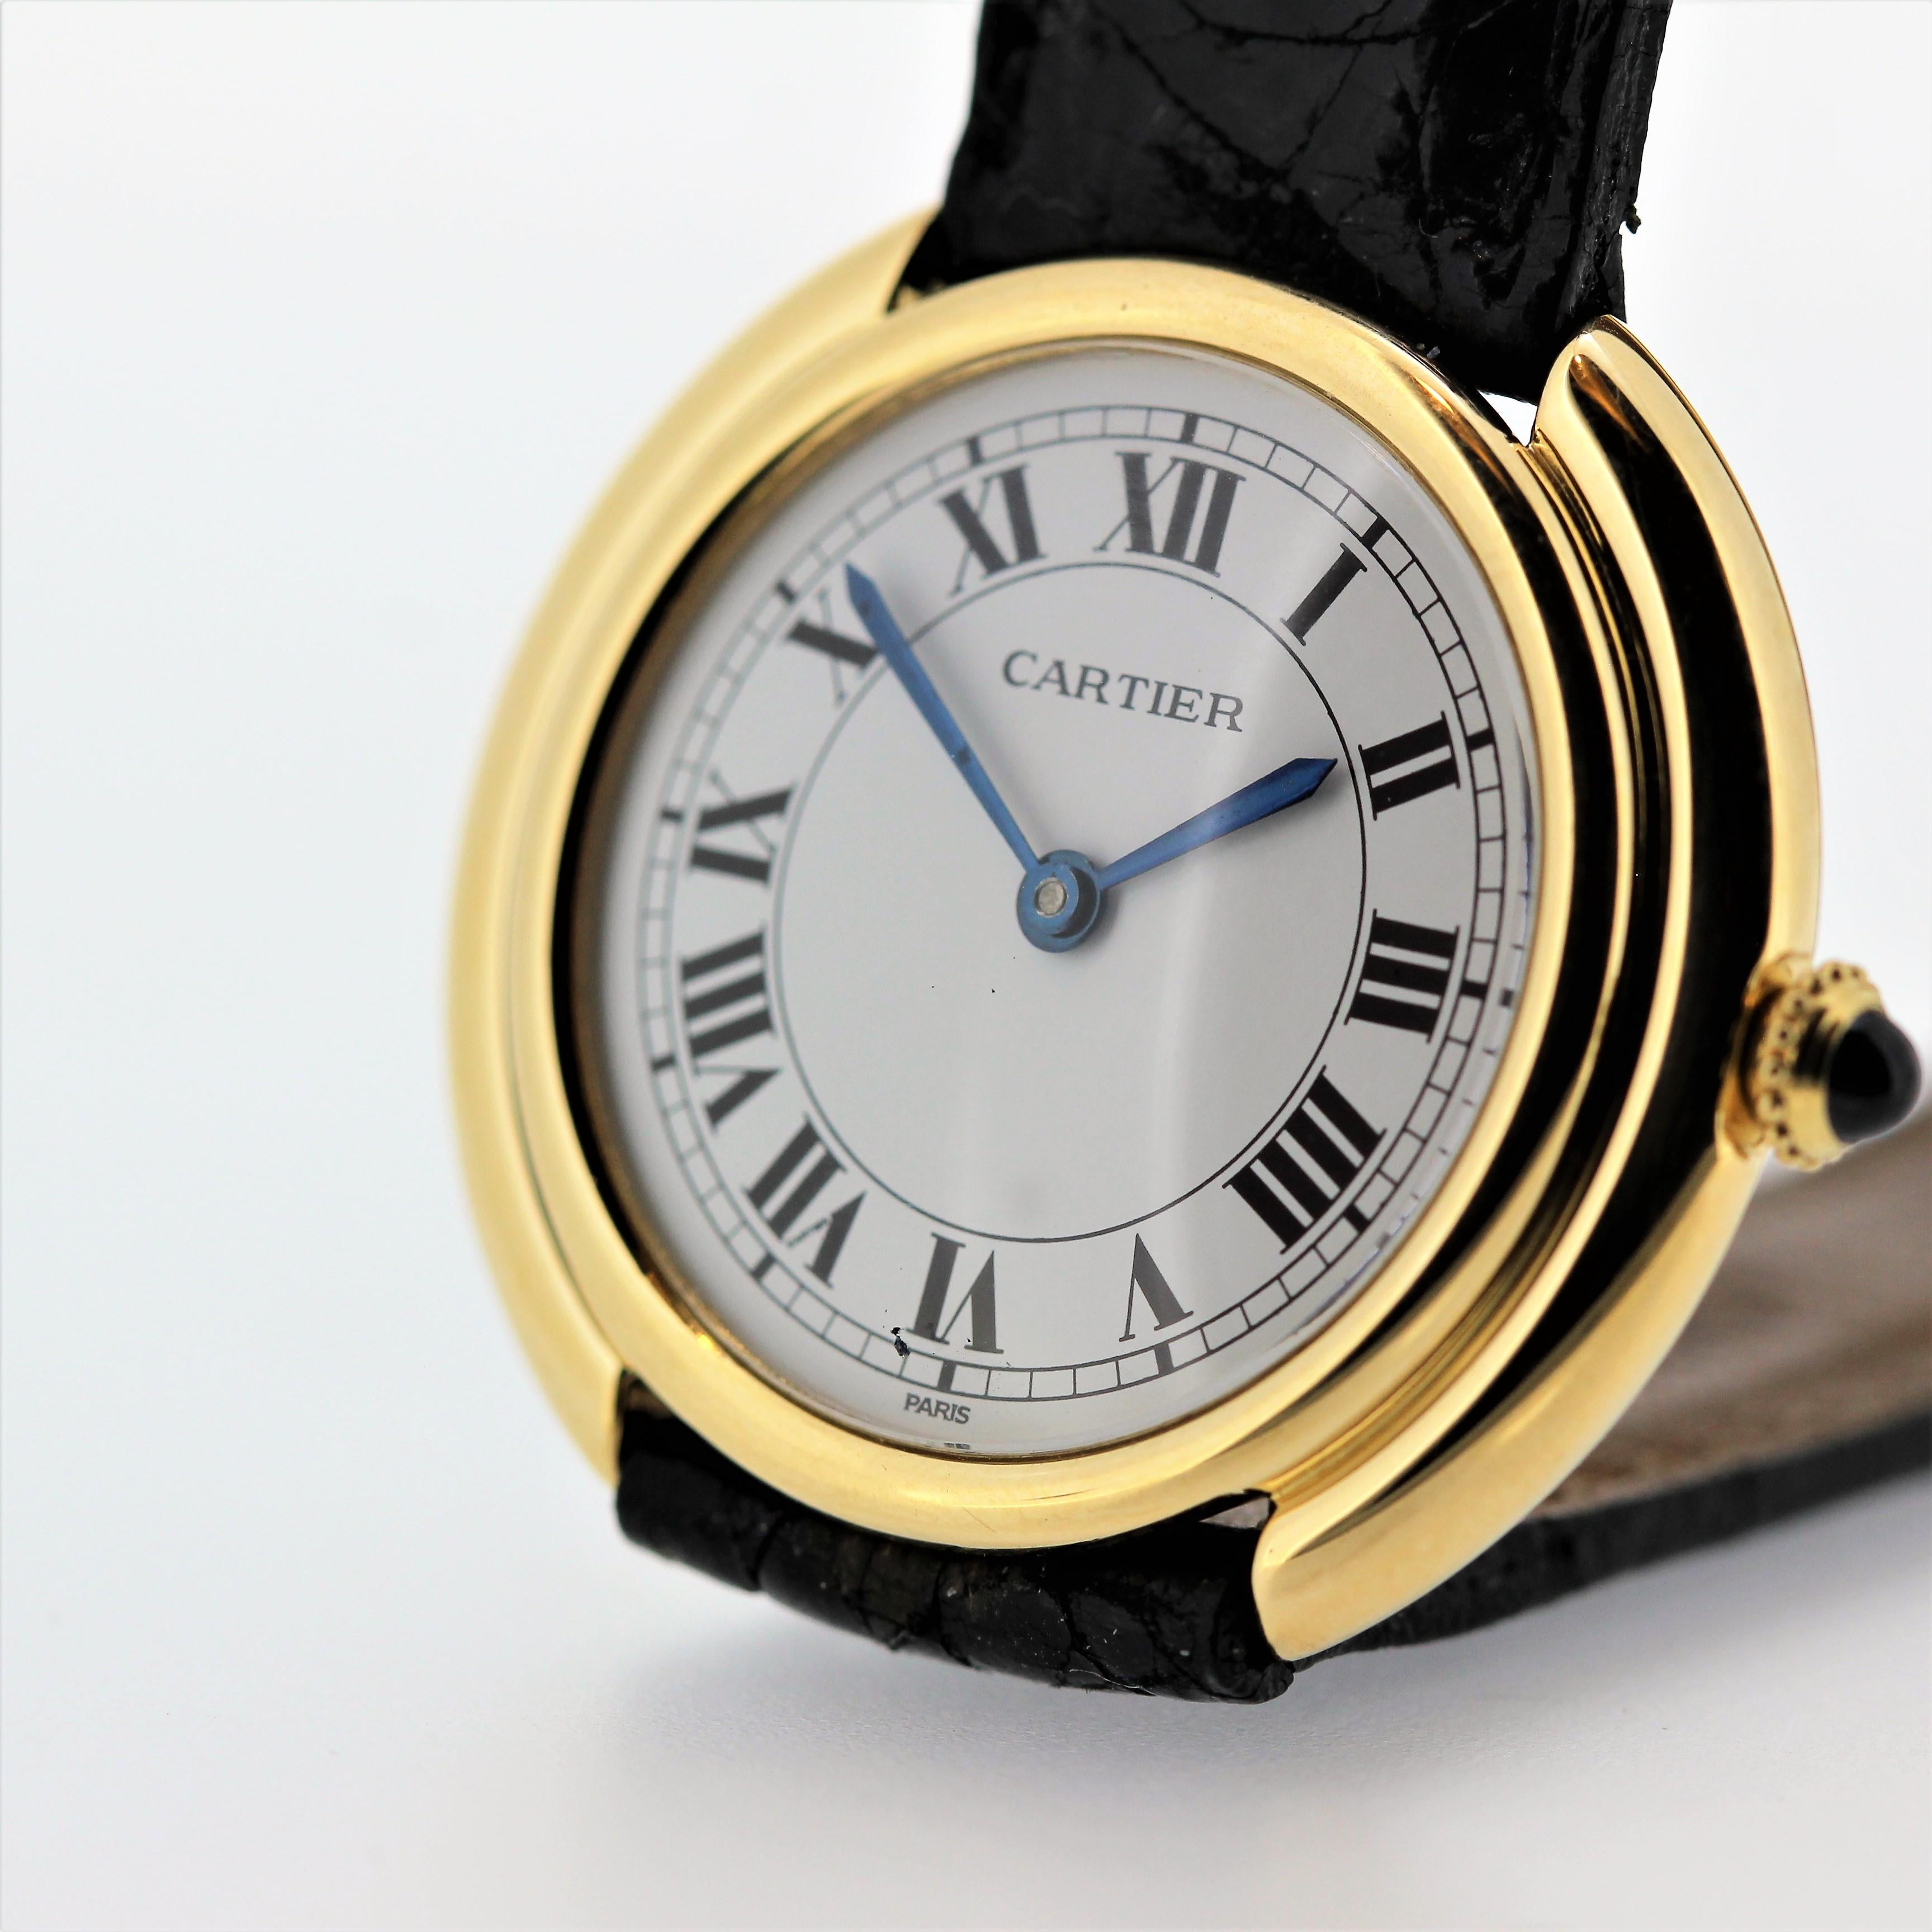 Einleitung:
Wir haben 2 von diesem Vintage Cartier Uhr.  
Diese Vintage Cartier Paris Vendome Uhr ist die kleine Größe, ca. 1975-1980.  Es ist 18K Gelbgold und misst 26mm im Durchmesser mit mechanischen Handaufzug 17 Juwelen Bewegung.  Sie hat ein